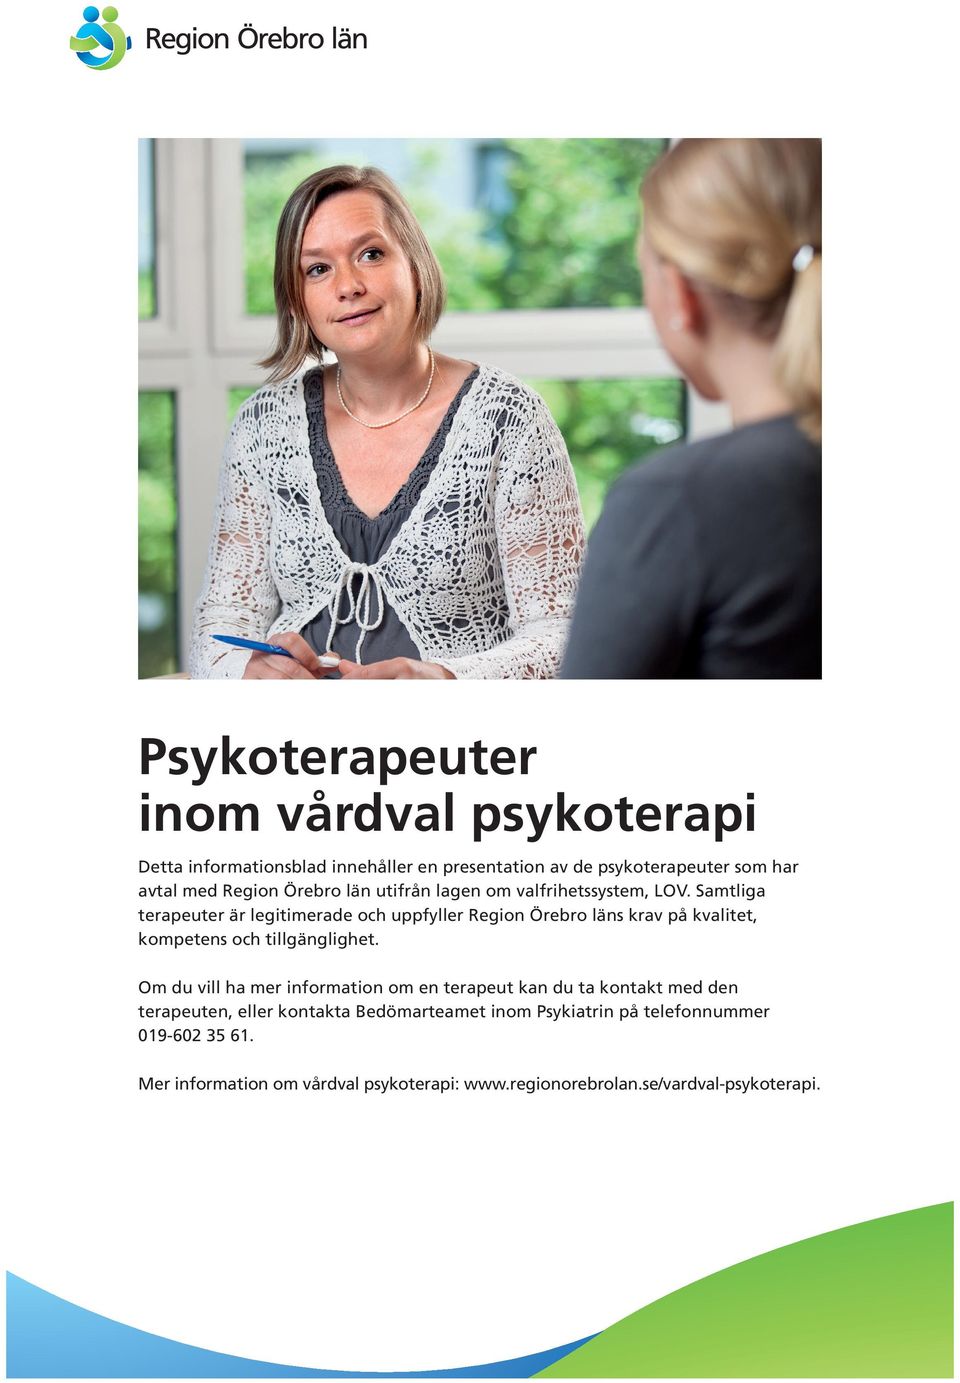 Samtliga terapeuter är legitimerade och uppfyller Region Örebro läns krav på kvalitet, kompetens och tillgänglighet.